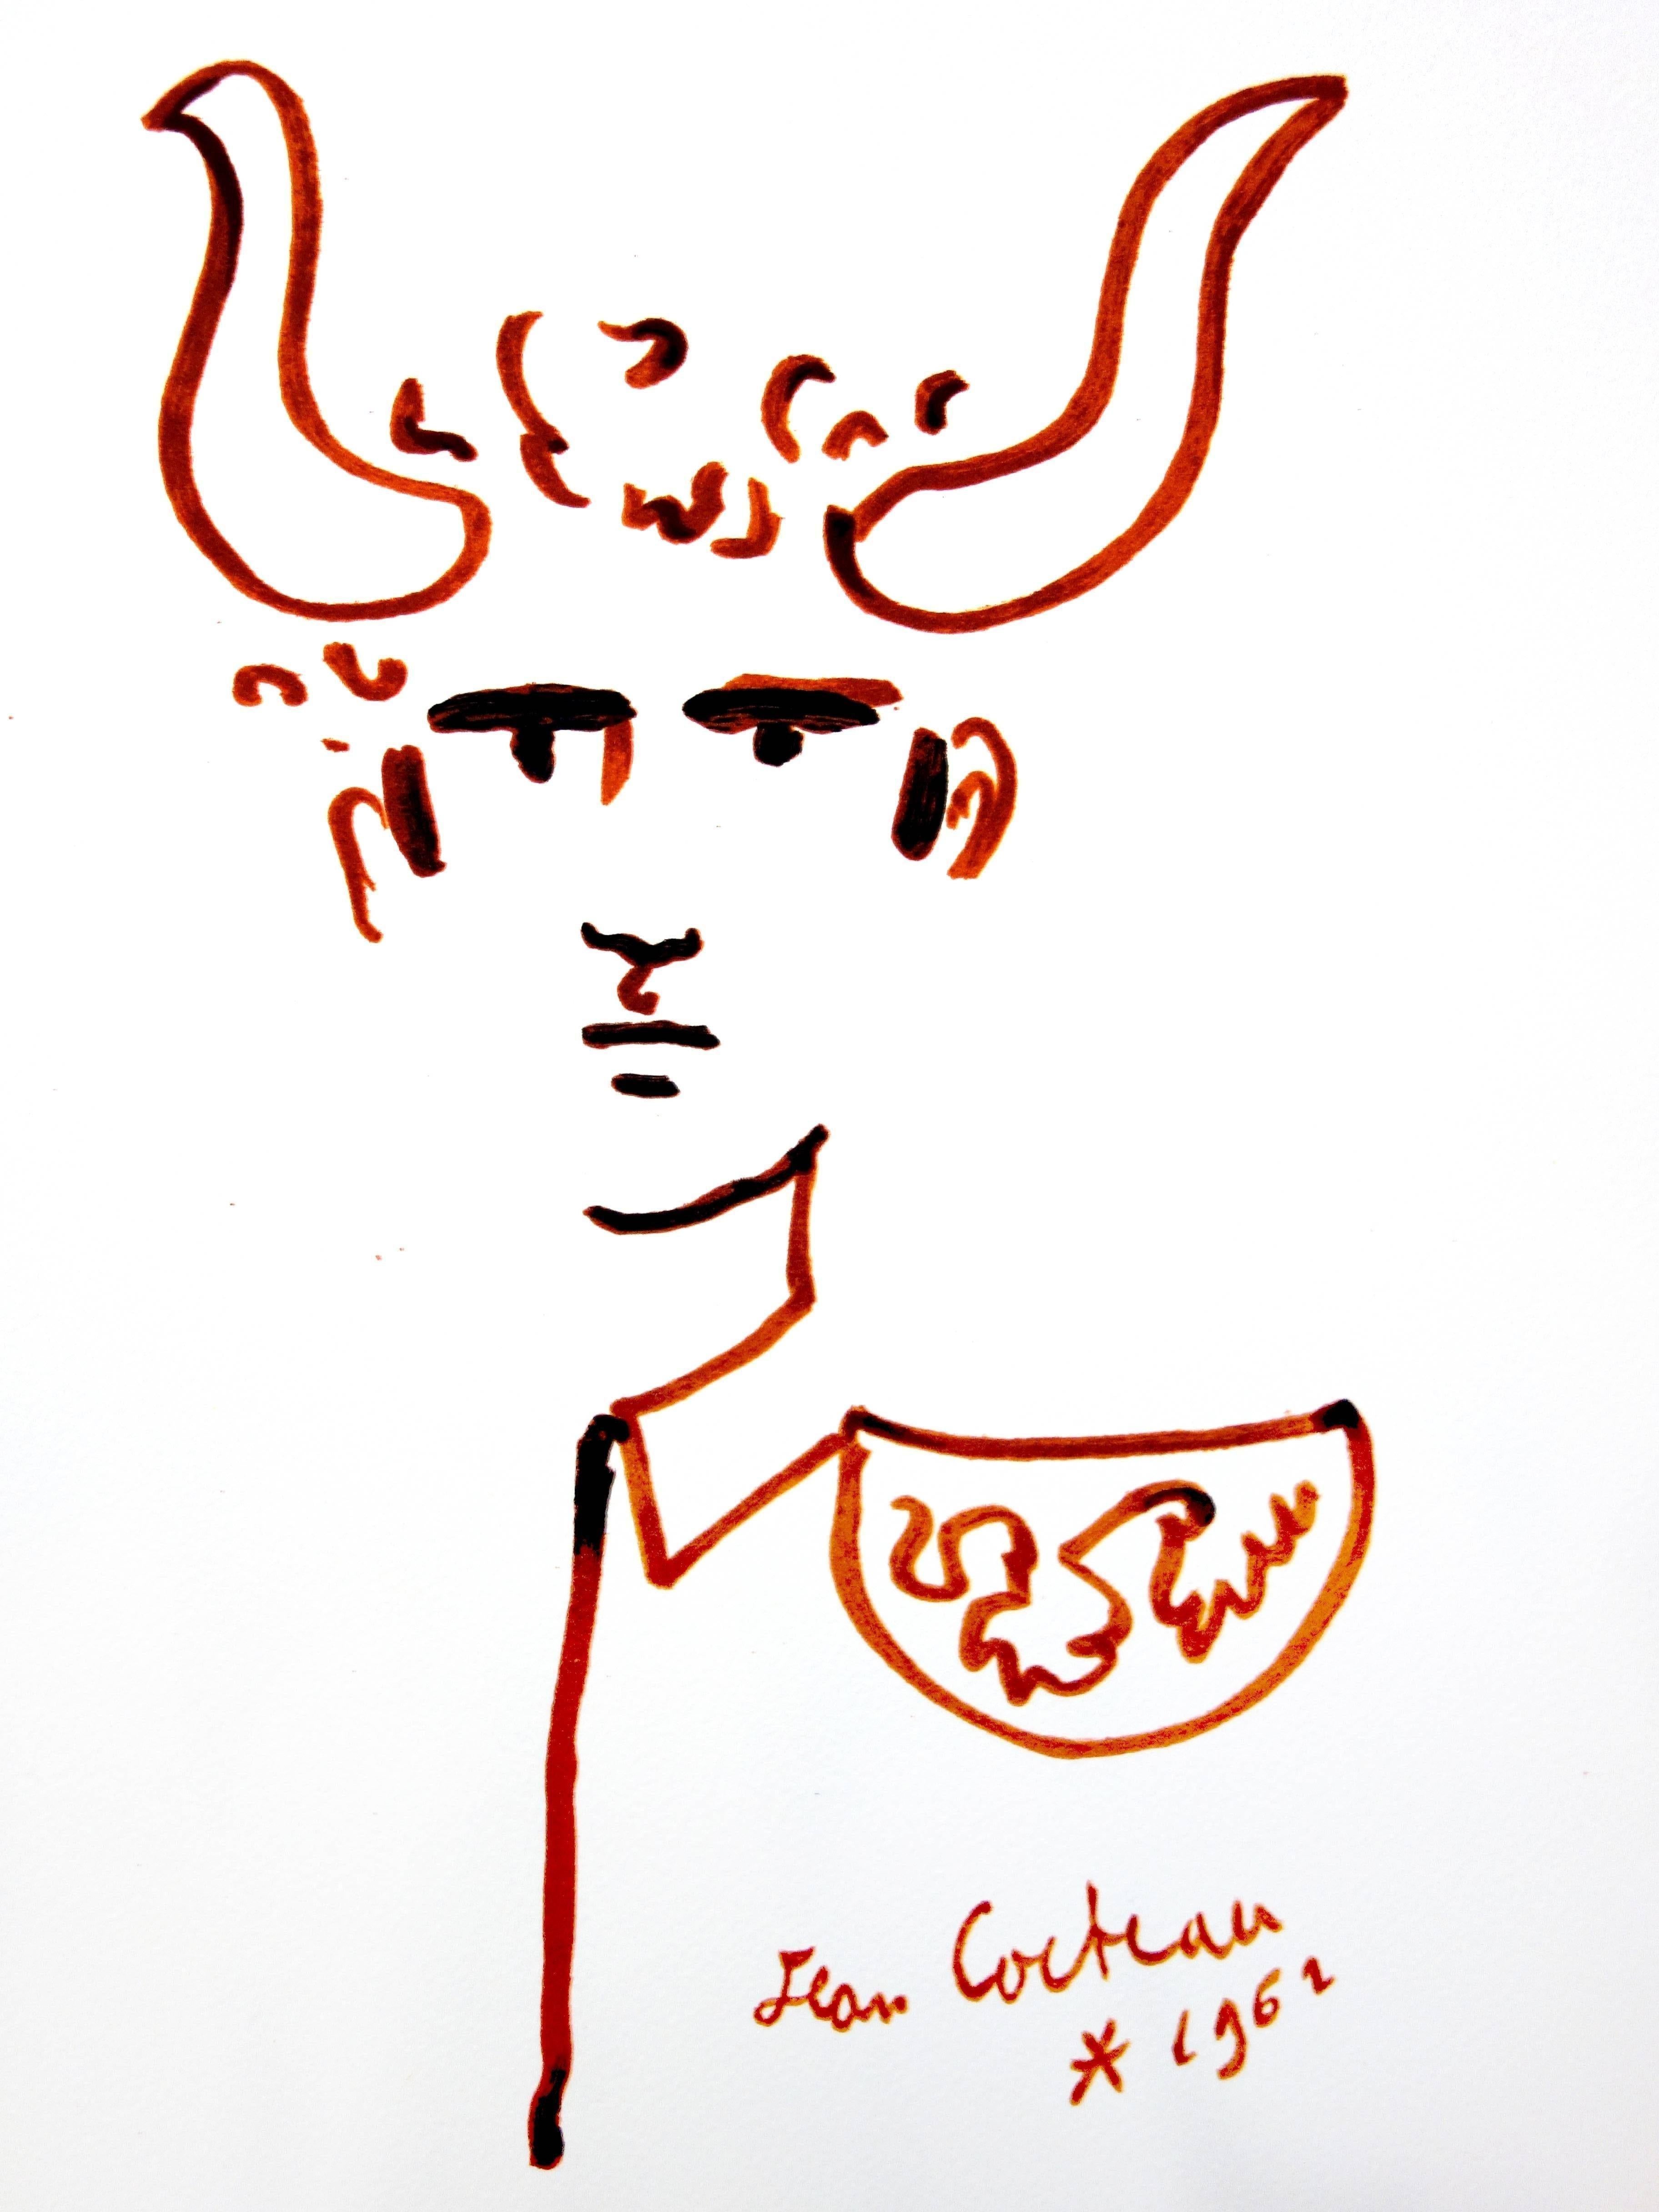 Original-Lithographie von Jean Cocteau
Titel: Taureaux
In der Platte signiert
Abmessungen: 40 x 30 cm
Auflage: 200
Luxuriöse Printausgabe aus dem Portfolio von Trinckvel
1965

Jean Cocteau

Der Schriftsteller, Künstler und Filmregisseur Jean Cocteau